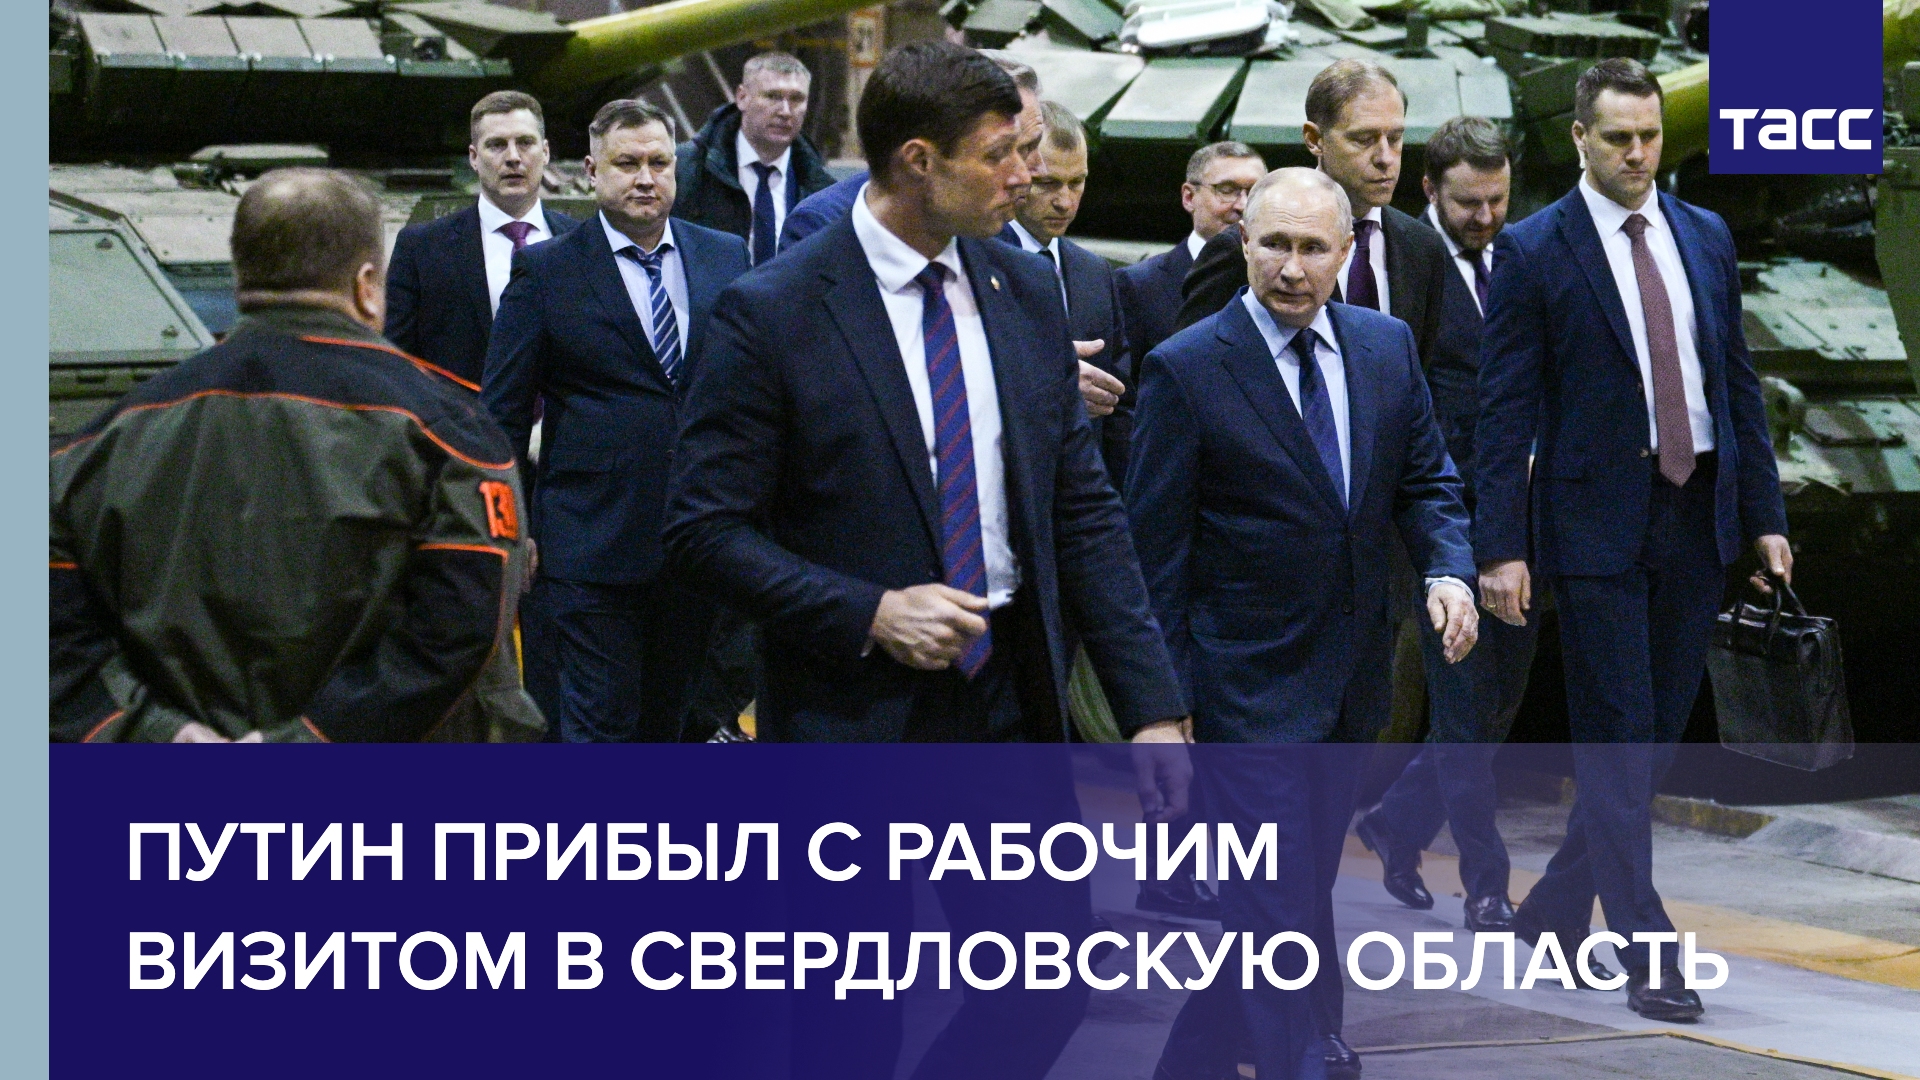 Путин прибыл с рабочим визитом в Свердловскую область